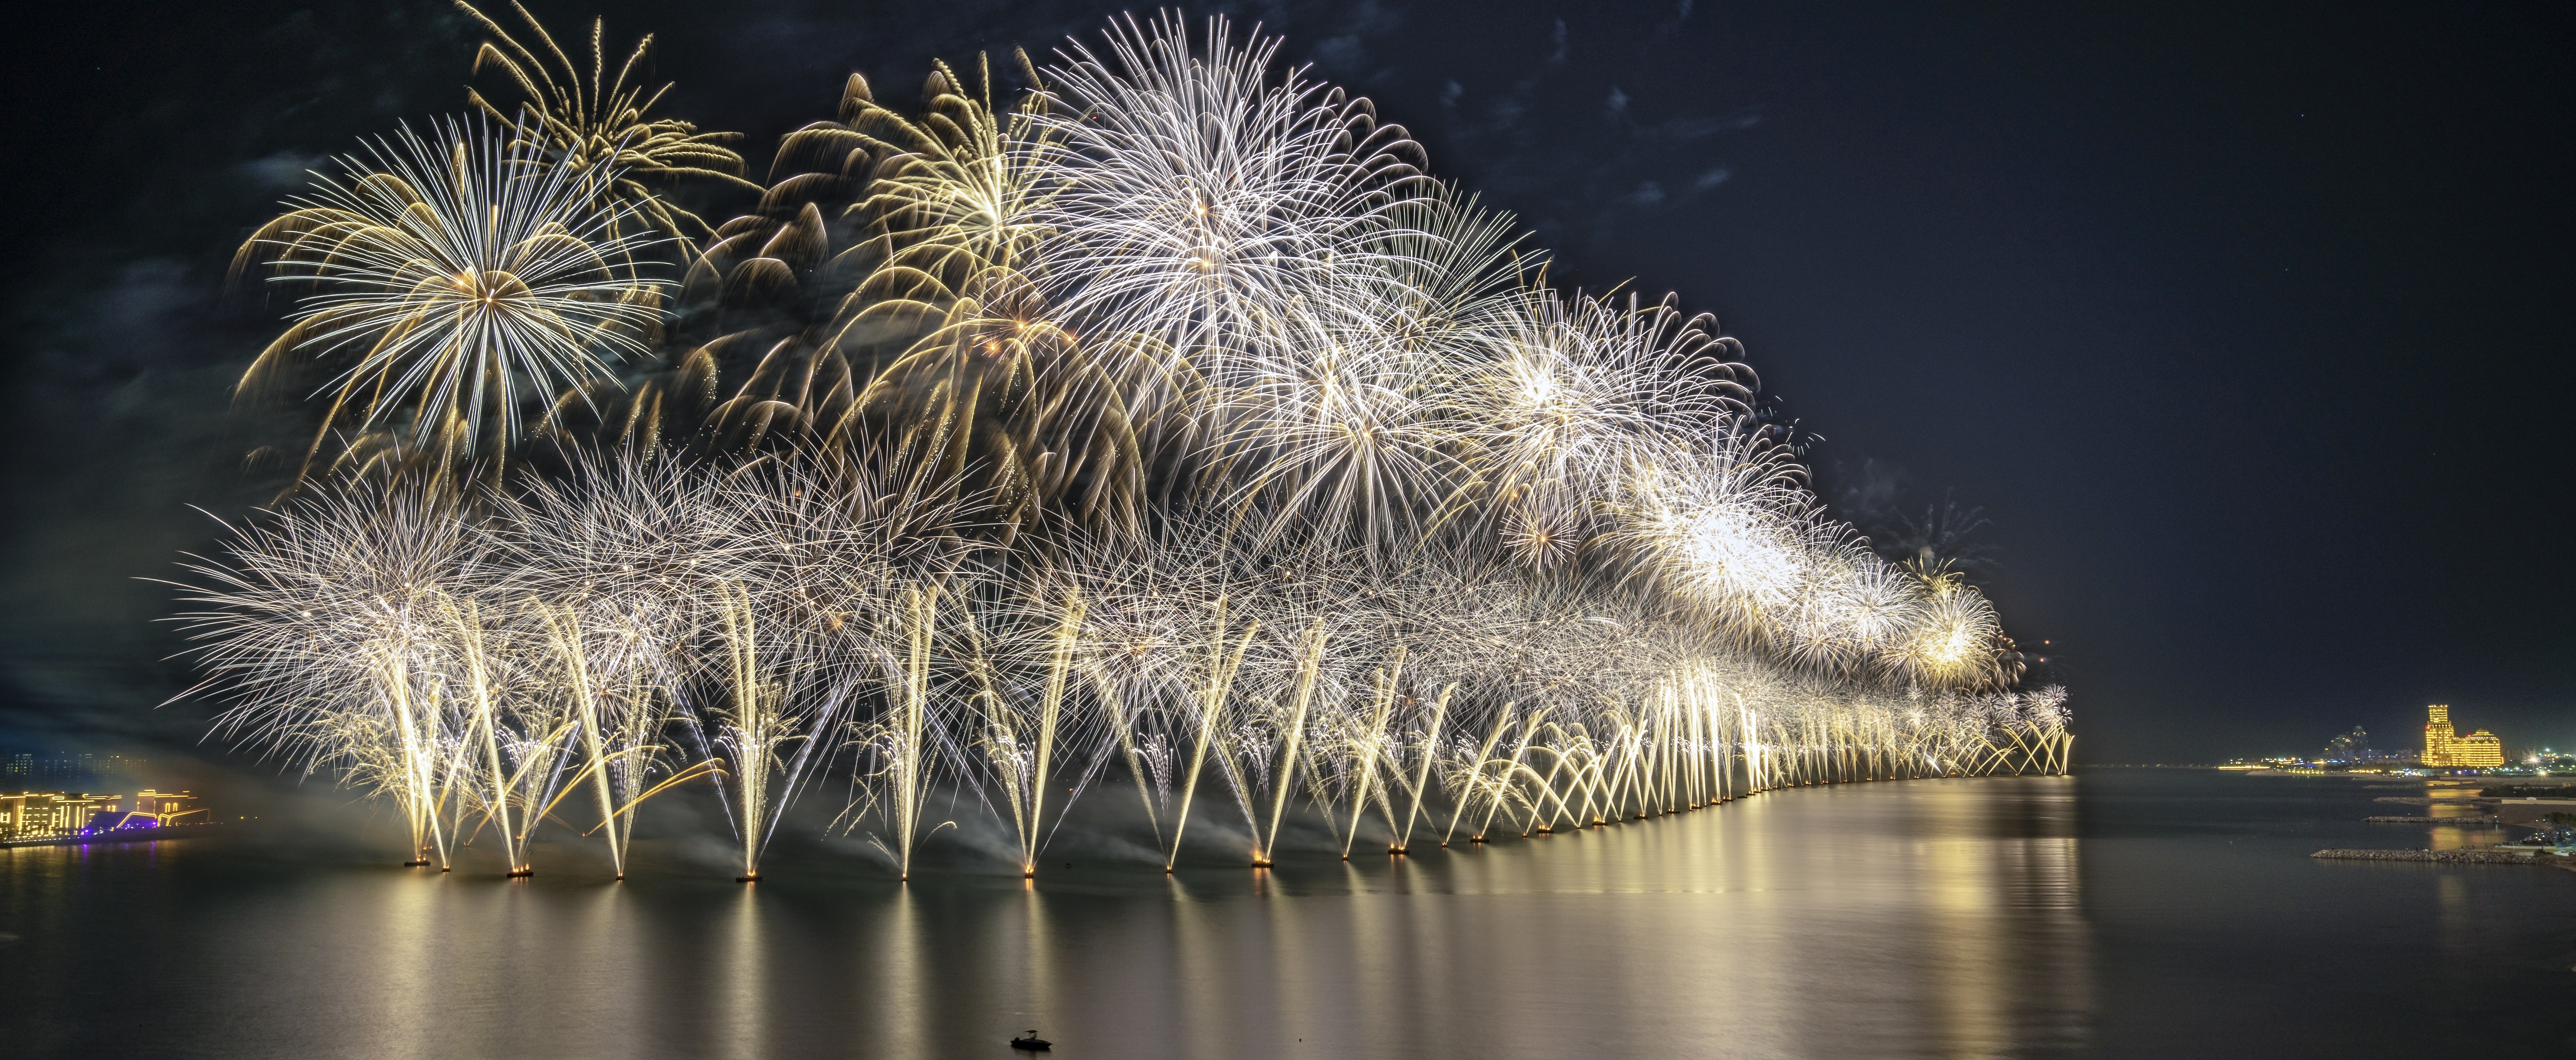 Les feux d'artifice du Réveillon du Nouvel An à Ras Al Khaimah éblouira le  monde avec deux nouvelles tentatives destinées à remporter des titres  record du monde de Guinness pour accueillir l'année